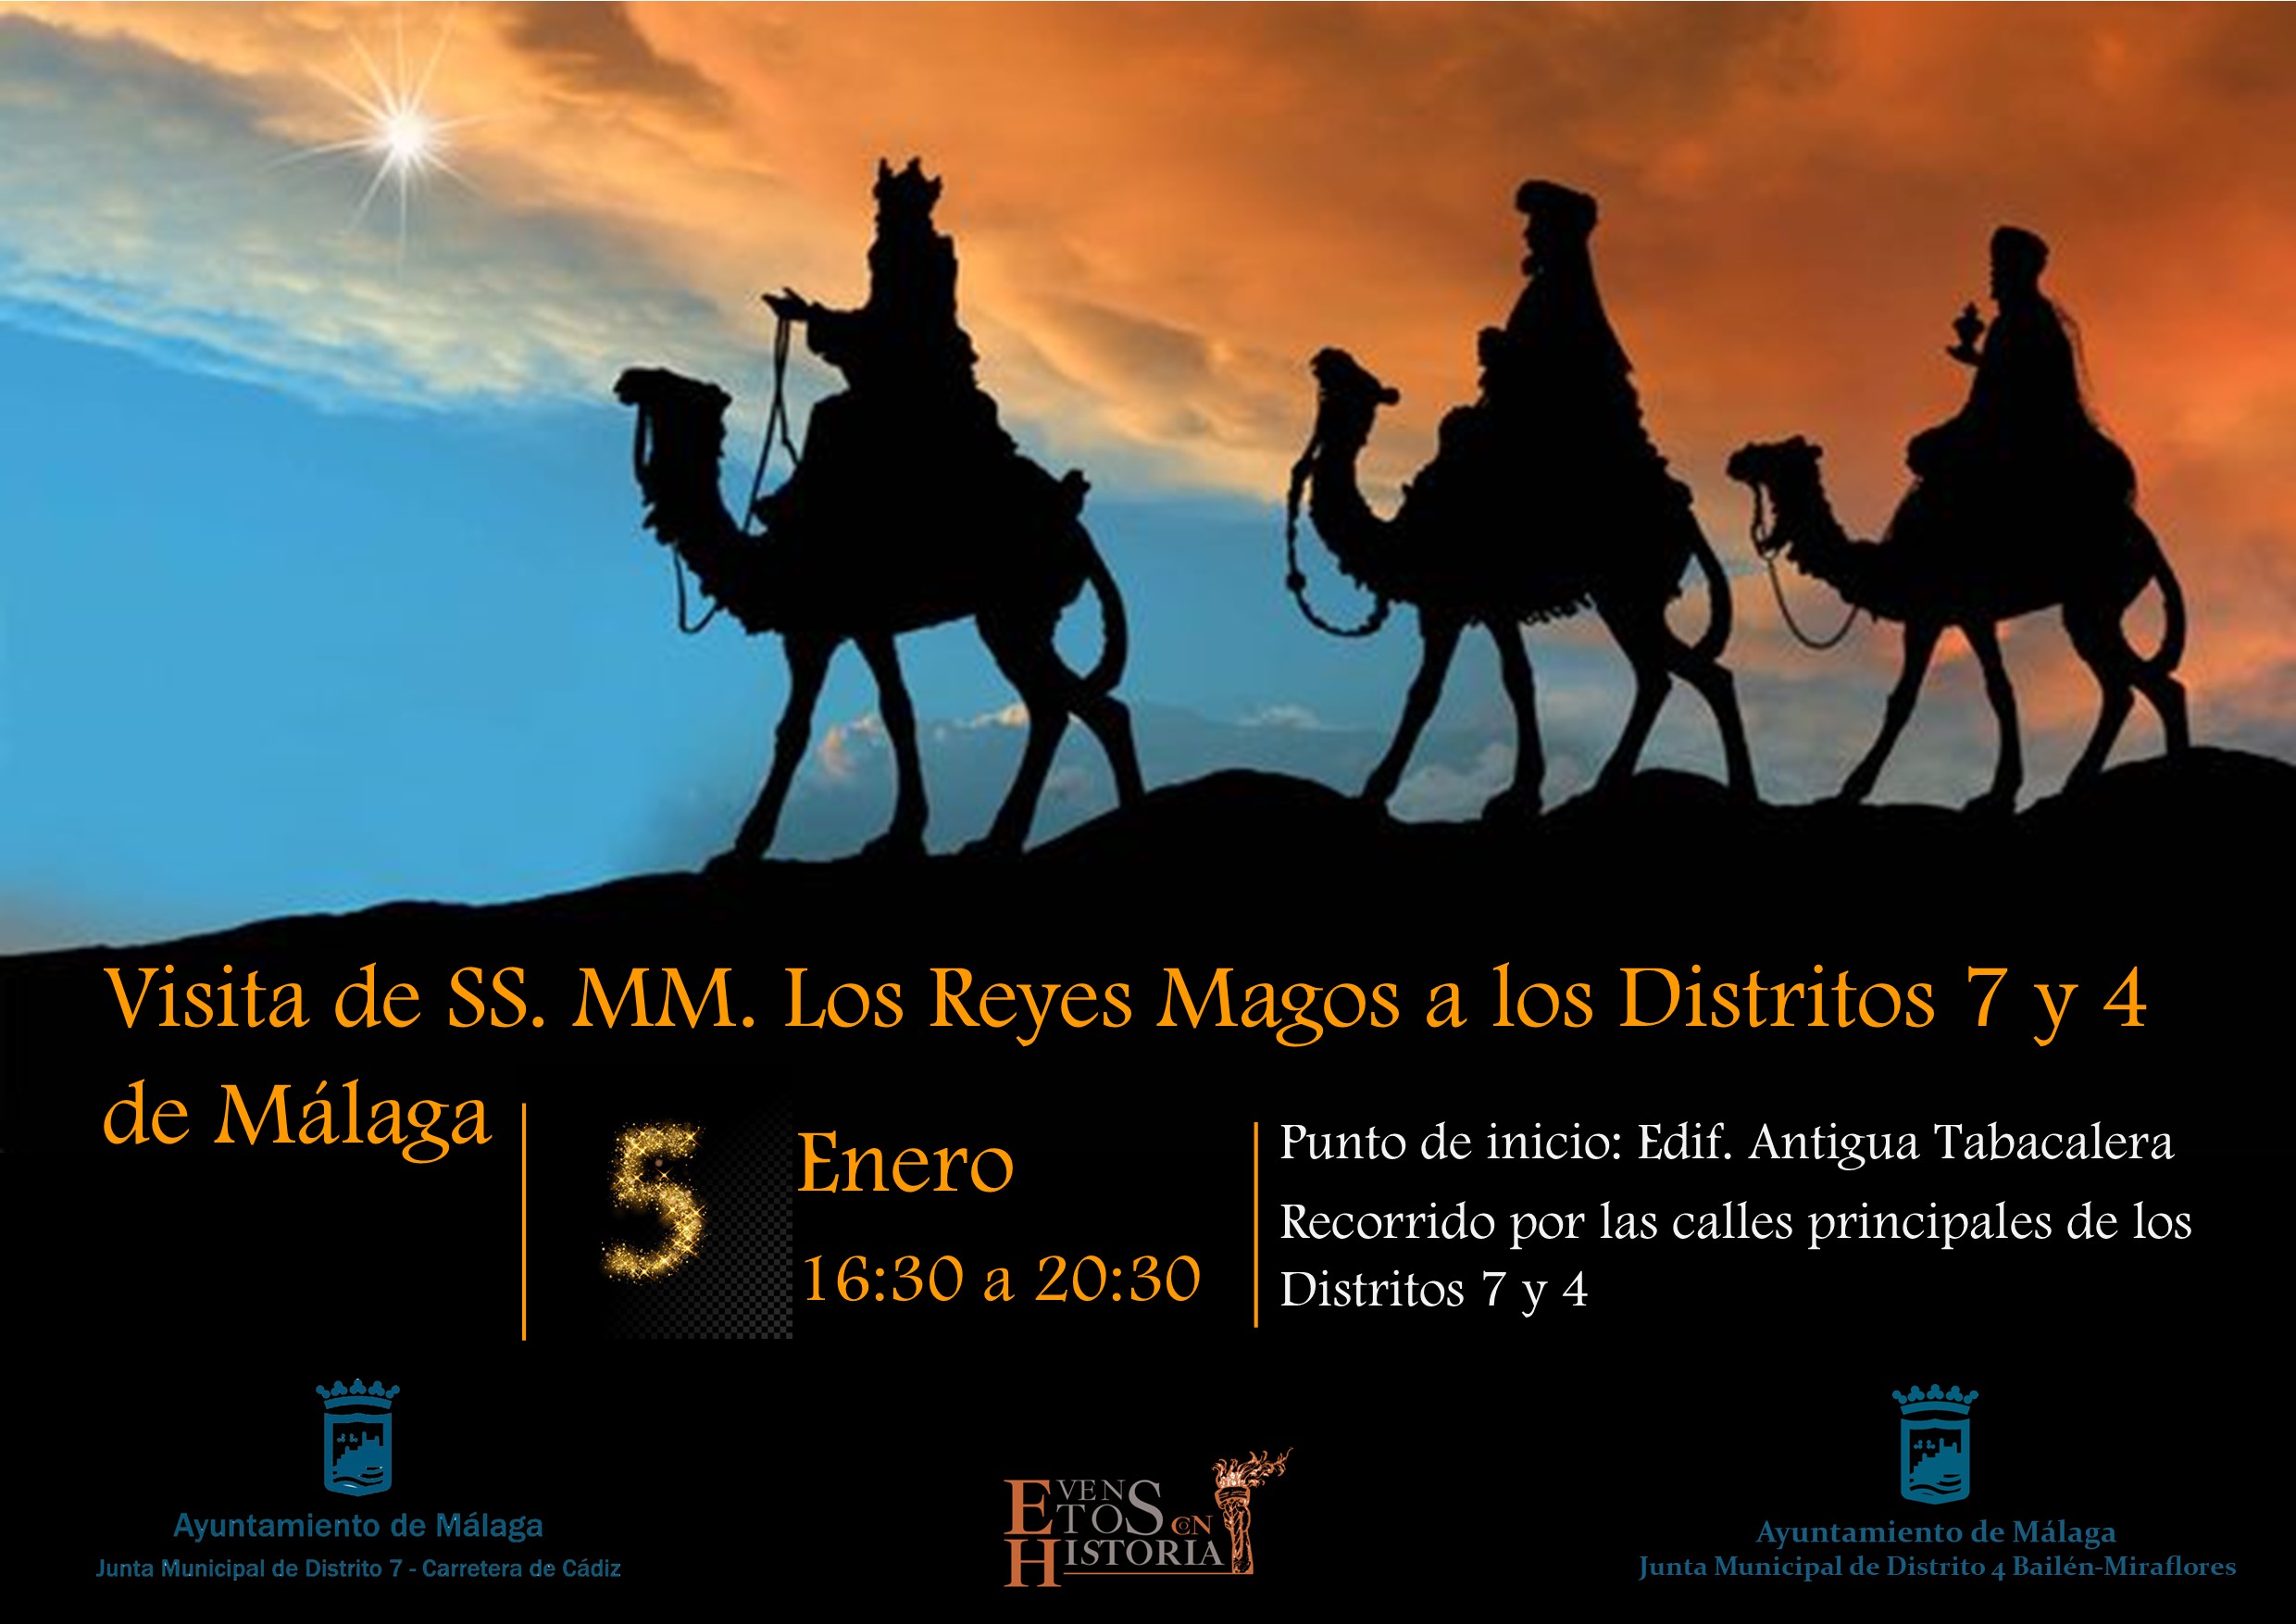 Visita de su SS.MM. los Reyes Magos a los Distritos 7 y 4 de Málaga